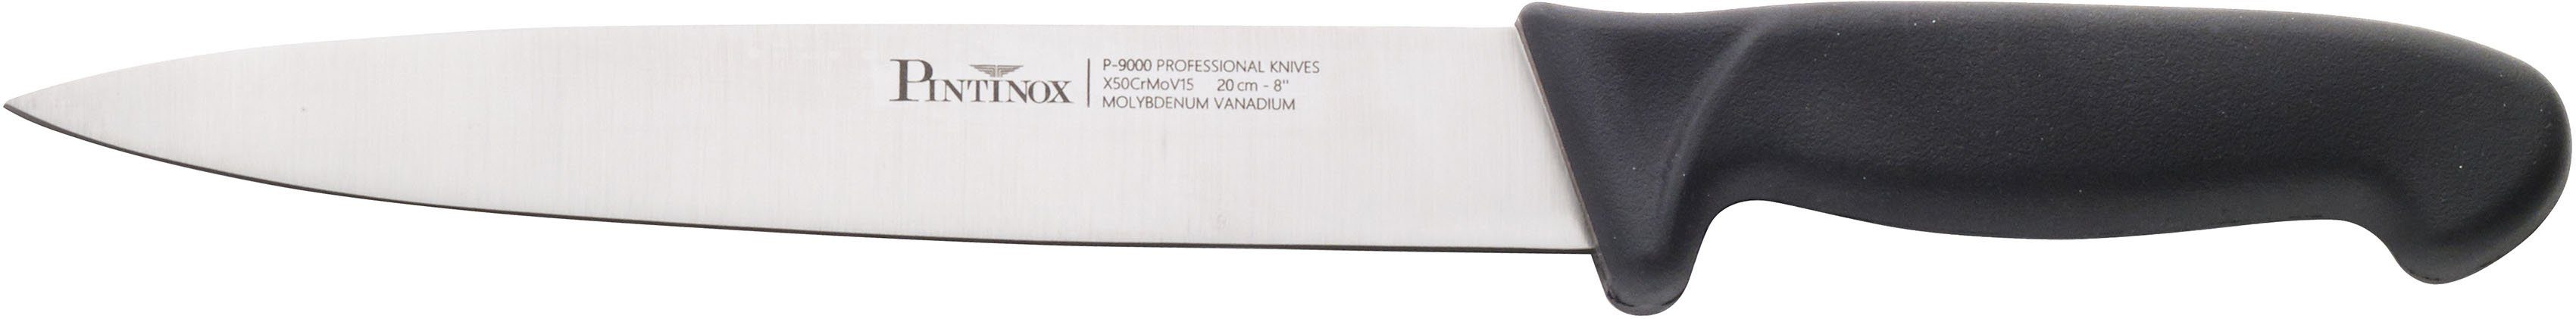 PINTINOX Allzweckmesser Coltelli P9000, Edelstahl mit rutschfestem Kunststoff, Klingenlänge 20 cm